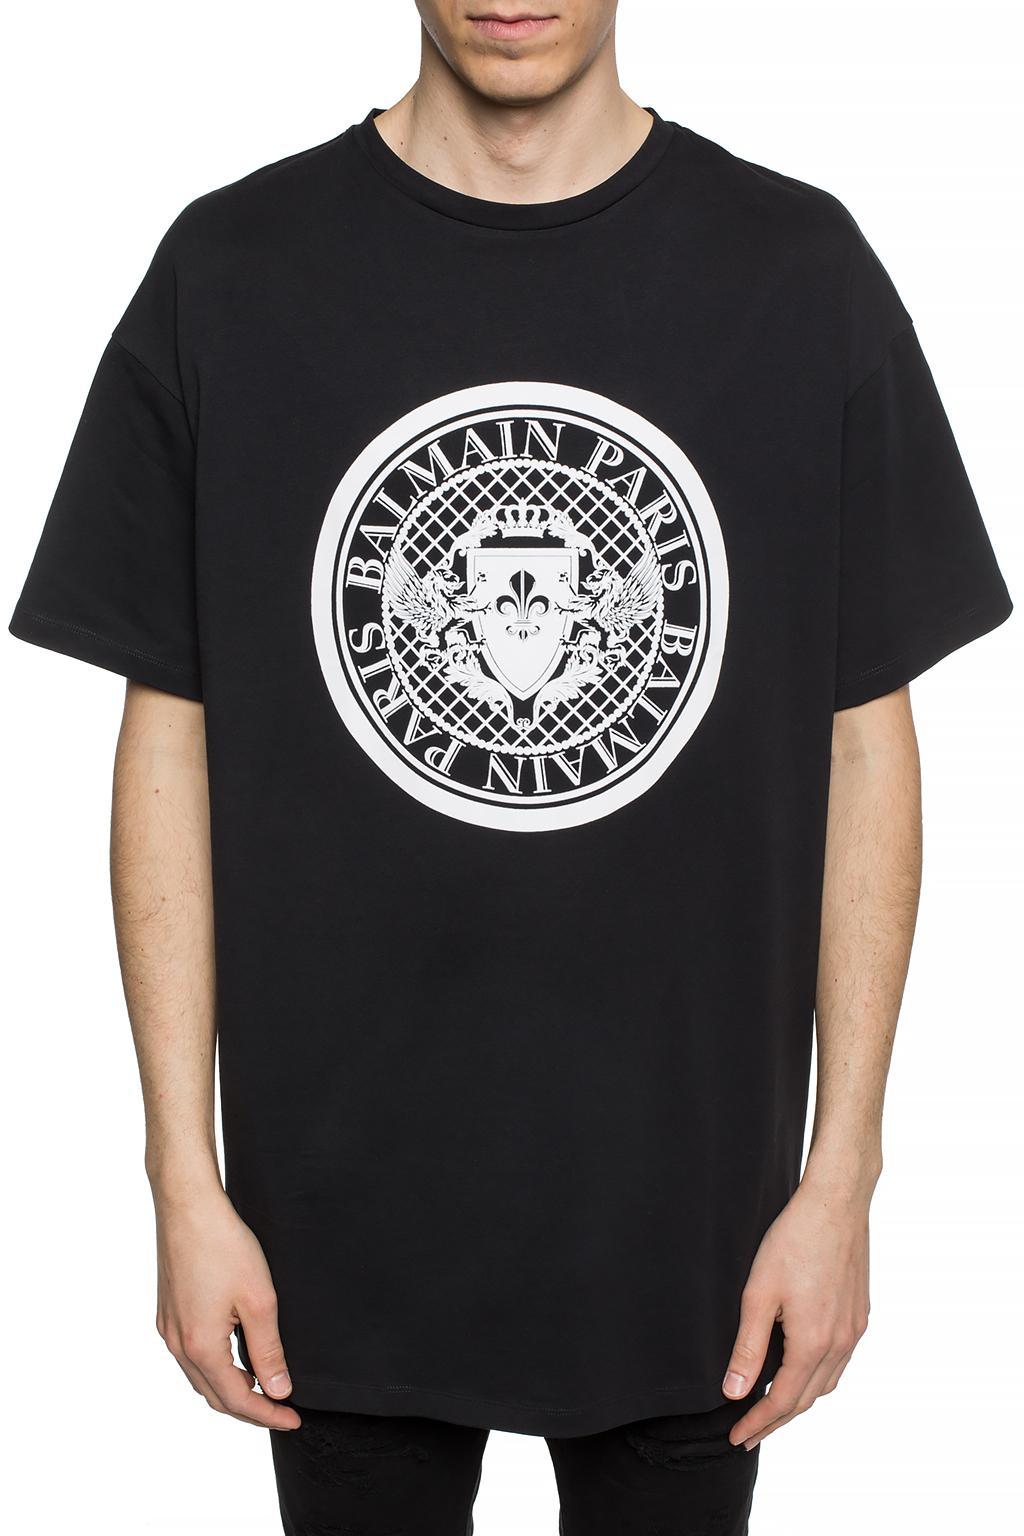 Balmain Logo T-shirt in Black for Men - Lyst